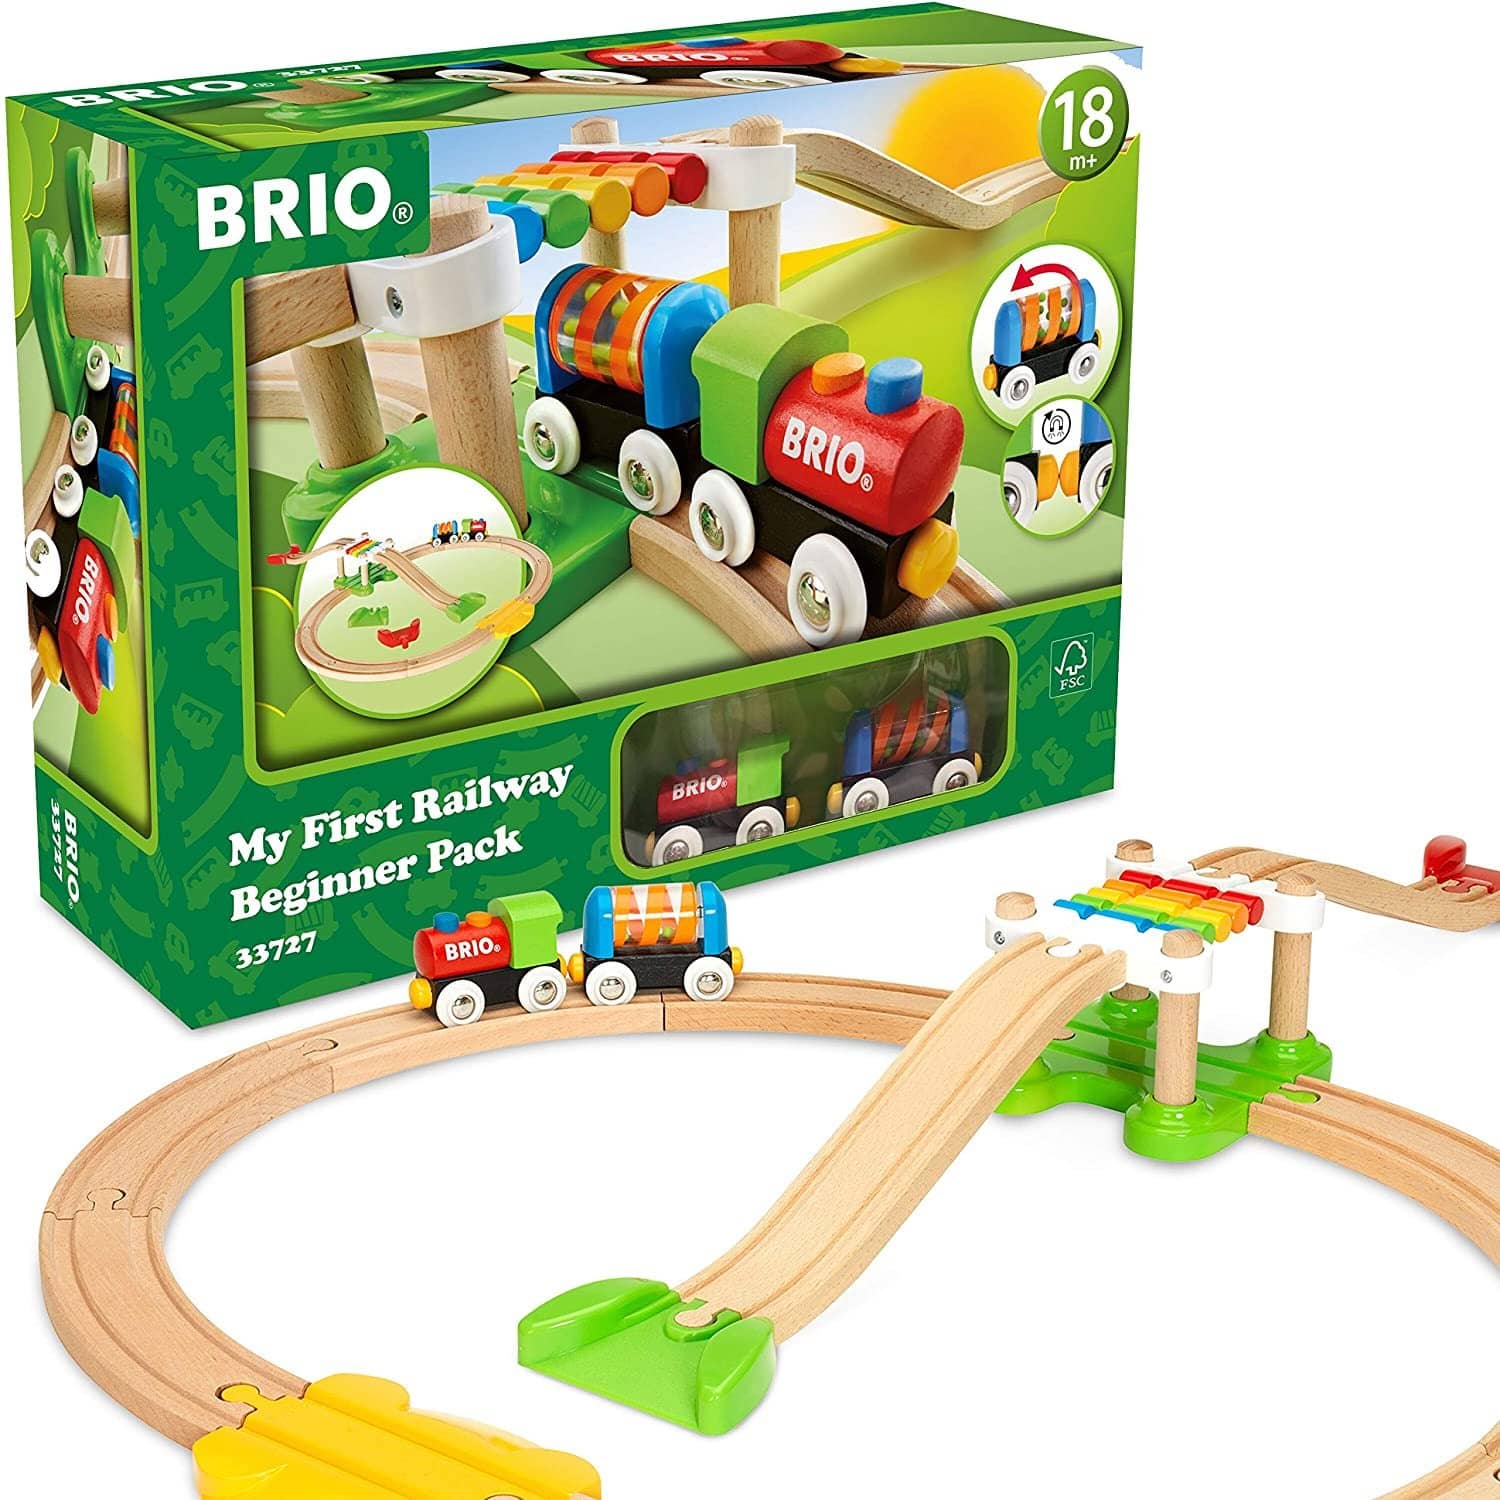 BRIO Starter Wooden Track Pack Train 13 Piece Set 